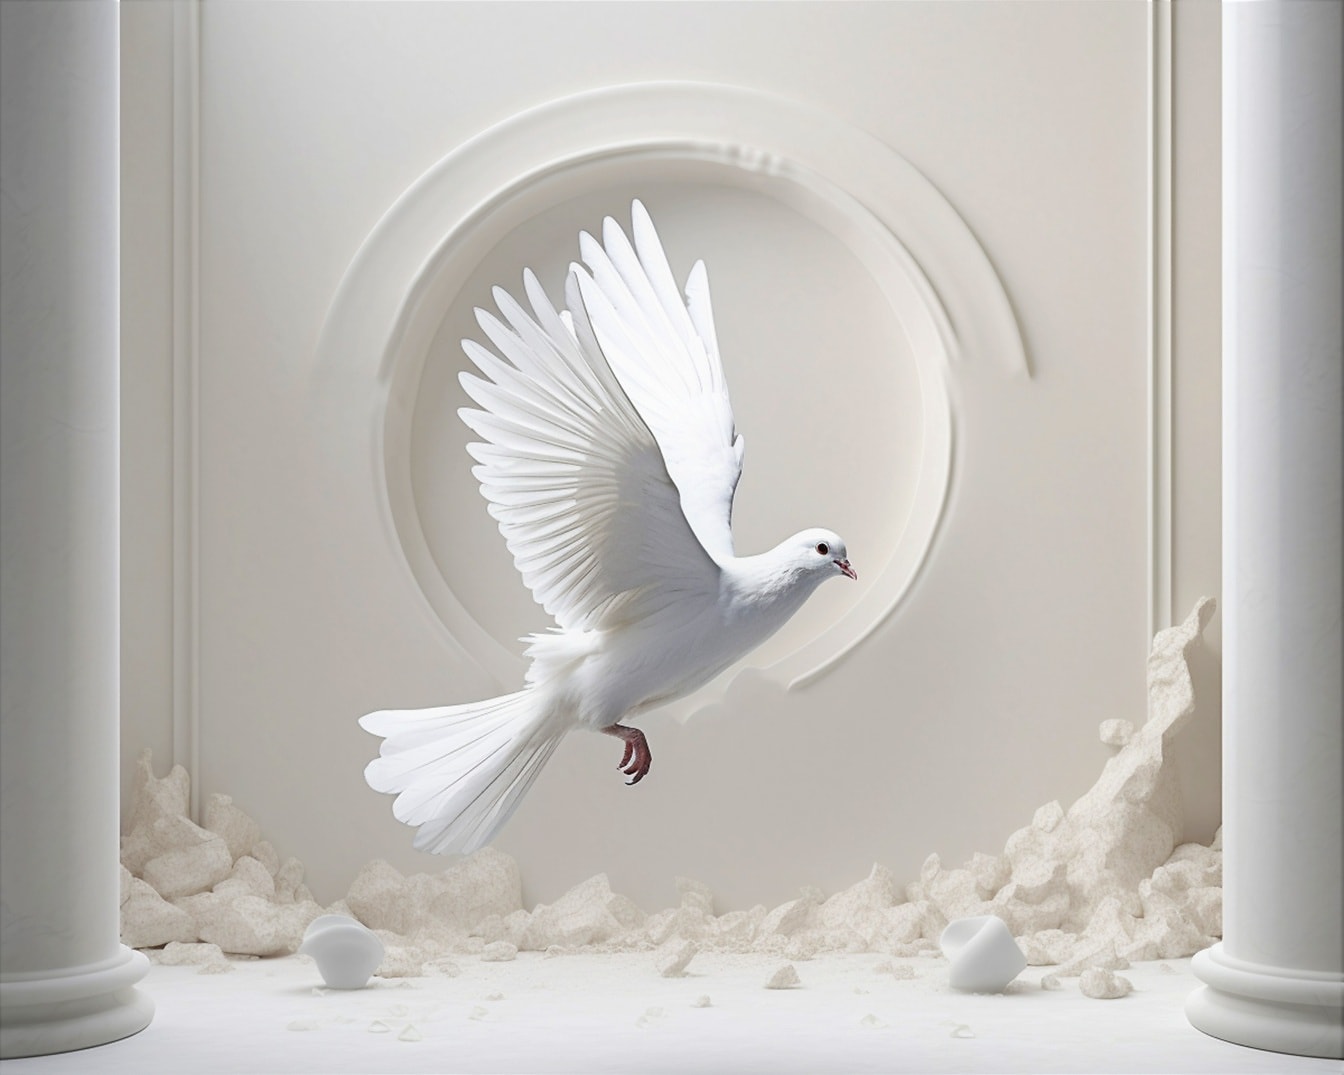 Hvid due flyver inde i forladt rum